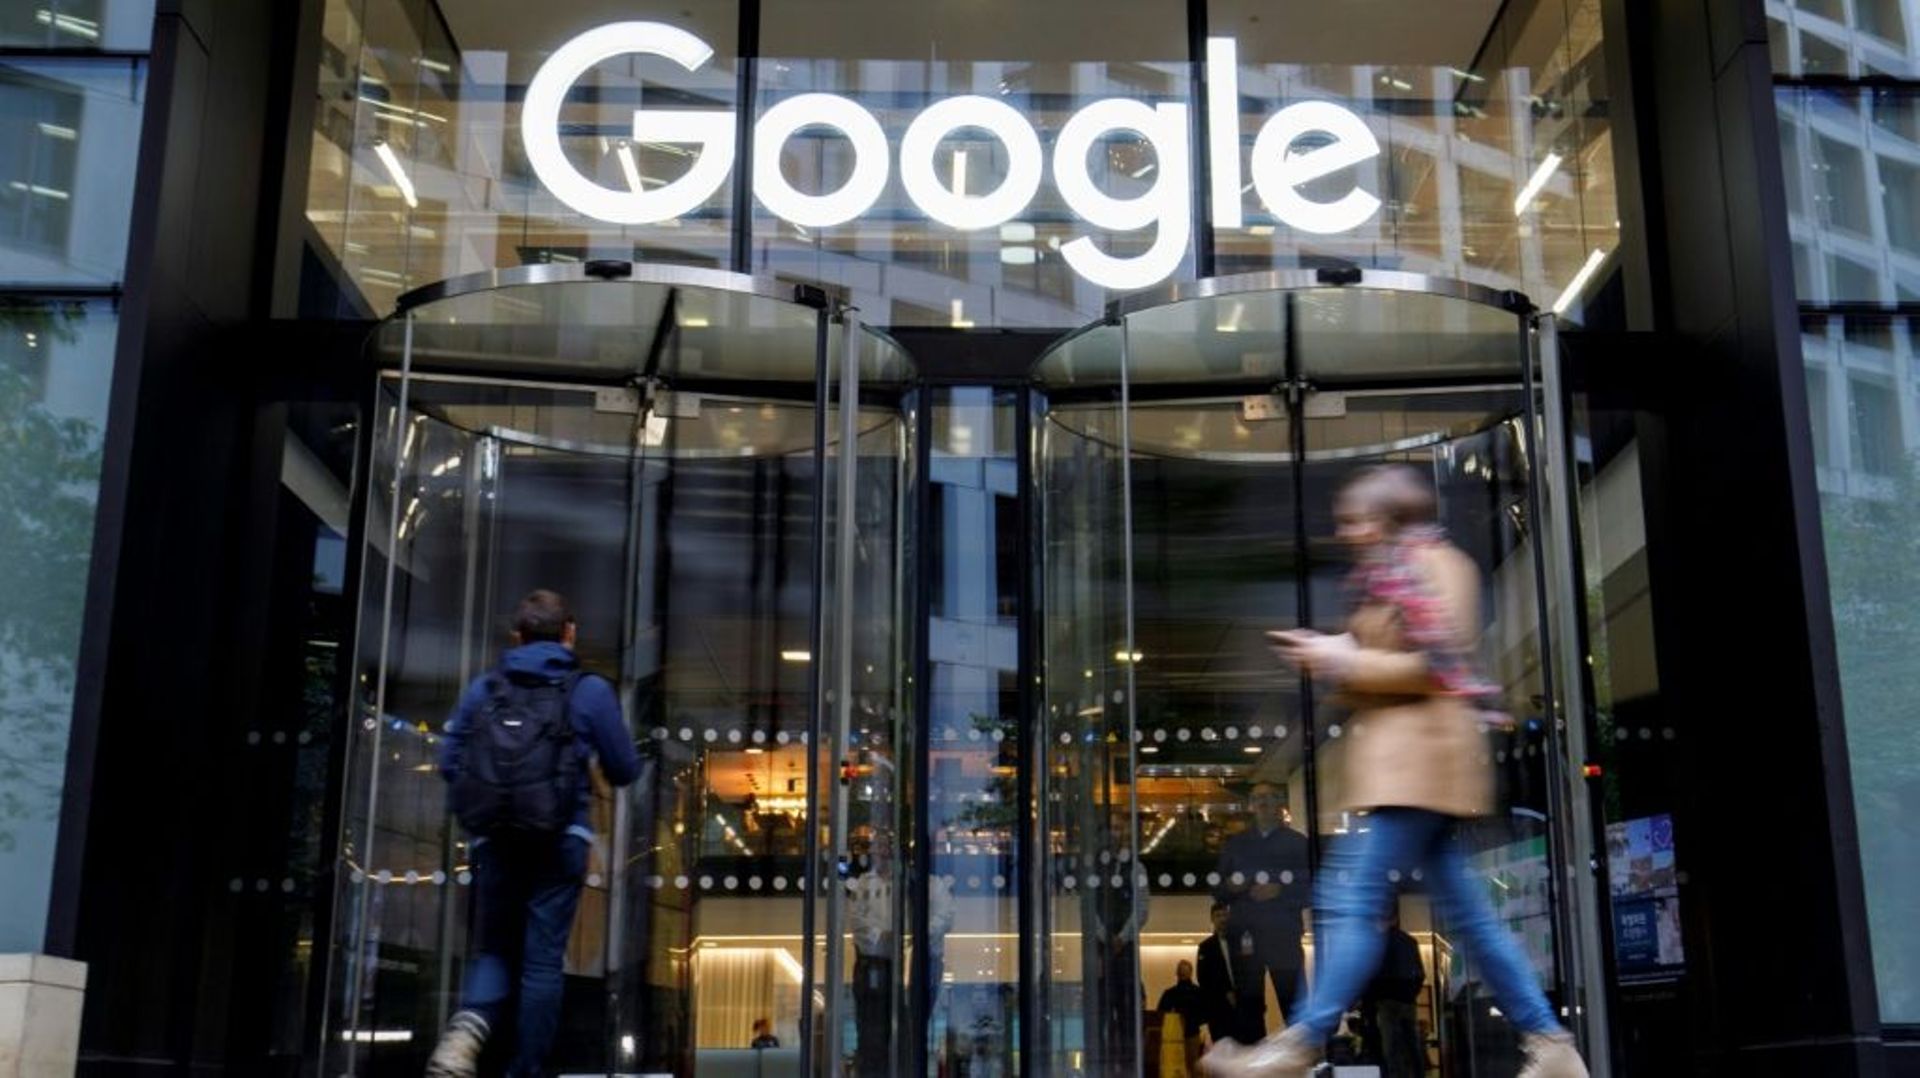 L’autorité autrichienne de protection des données met à l’index le géant du web Google, accusé de violer les règles sur la vie privée